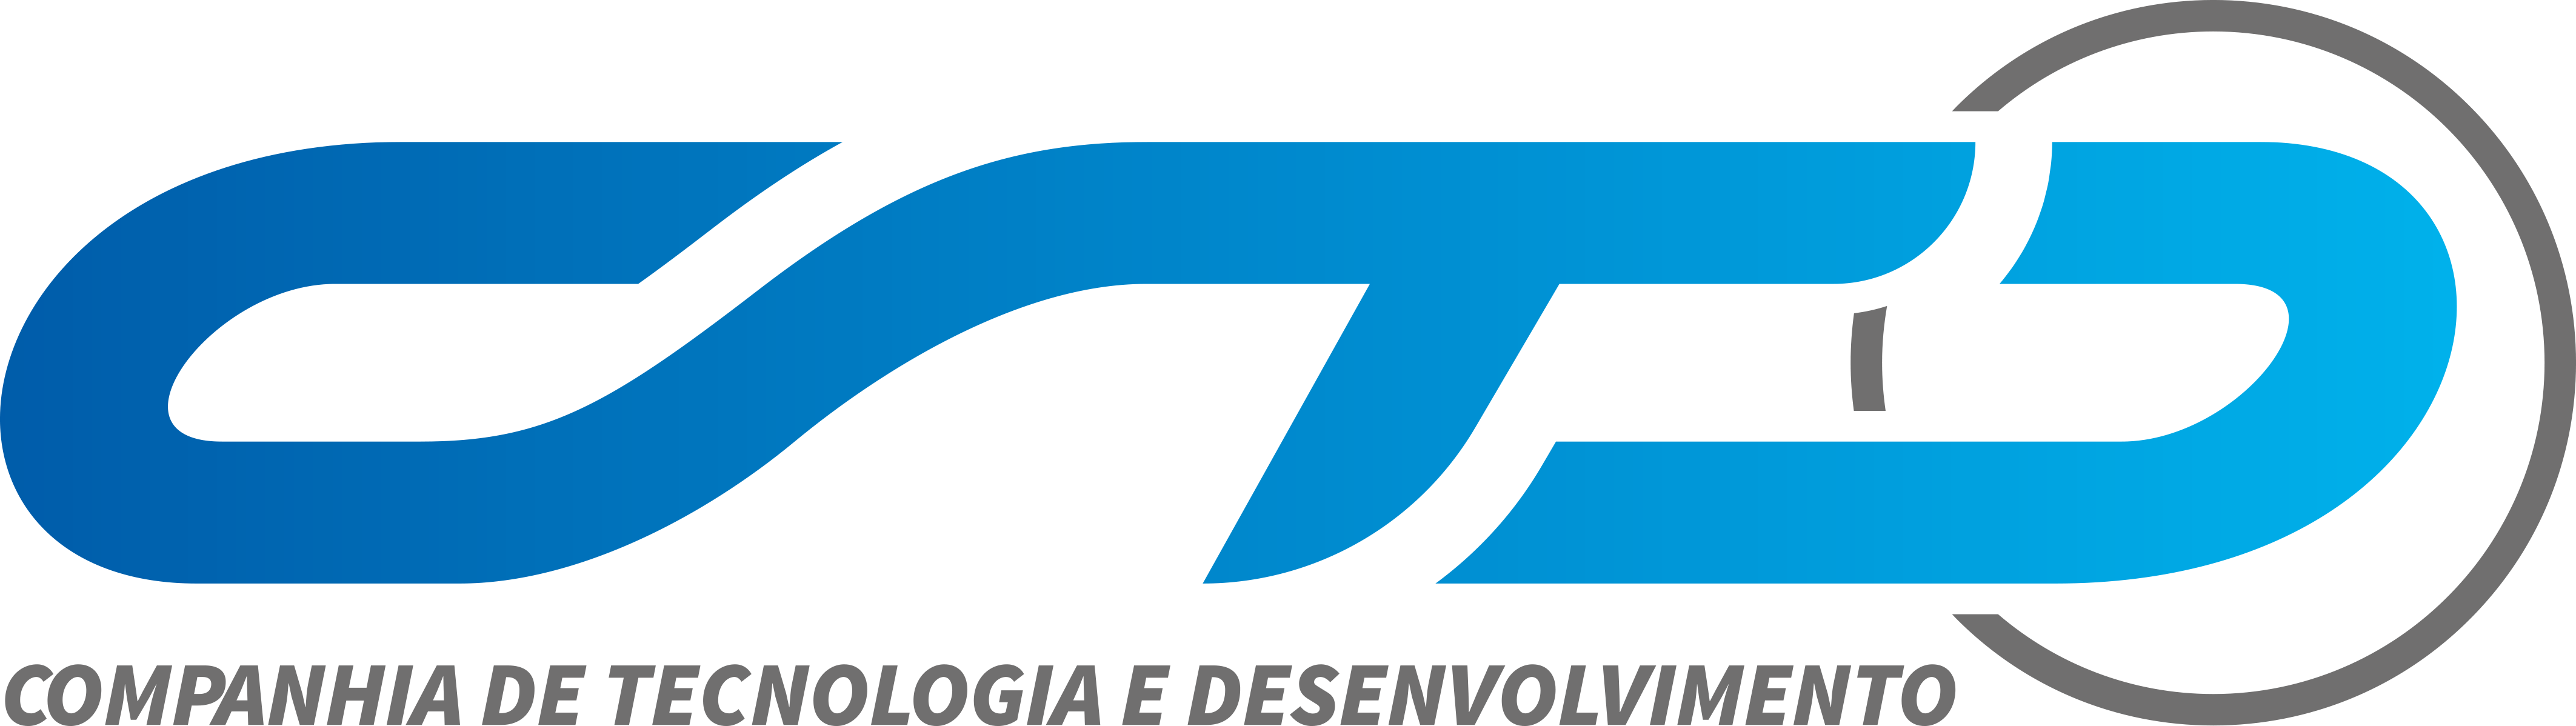 logo ctd